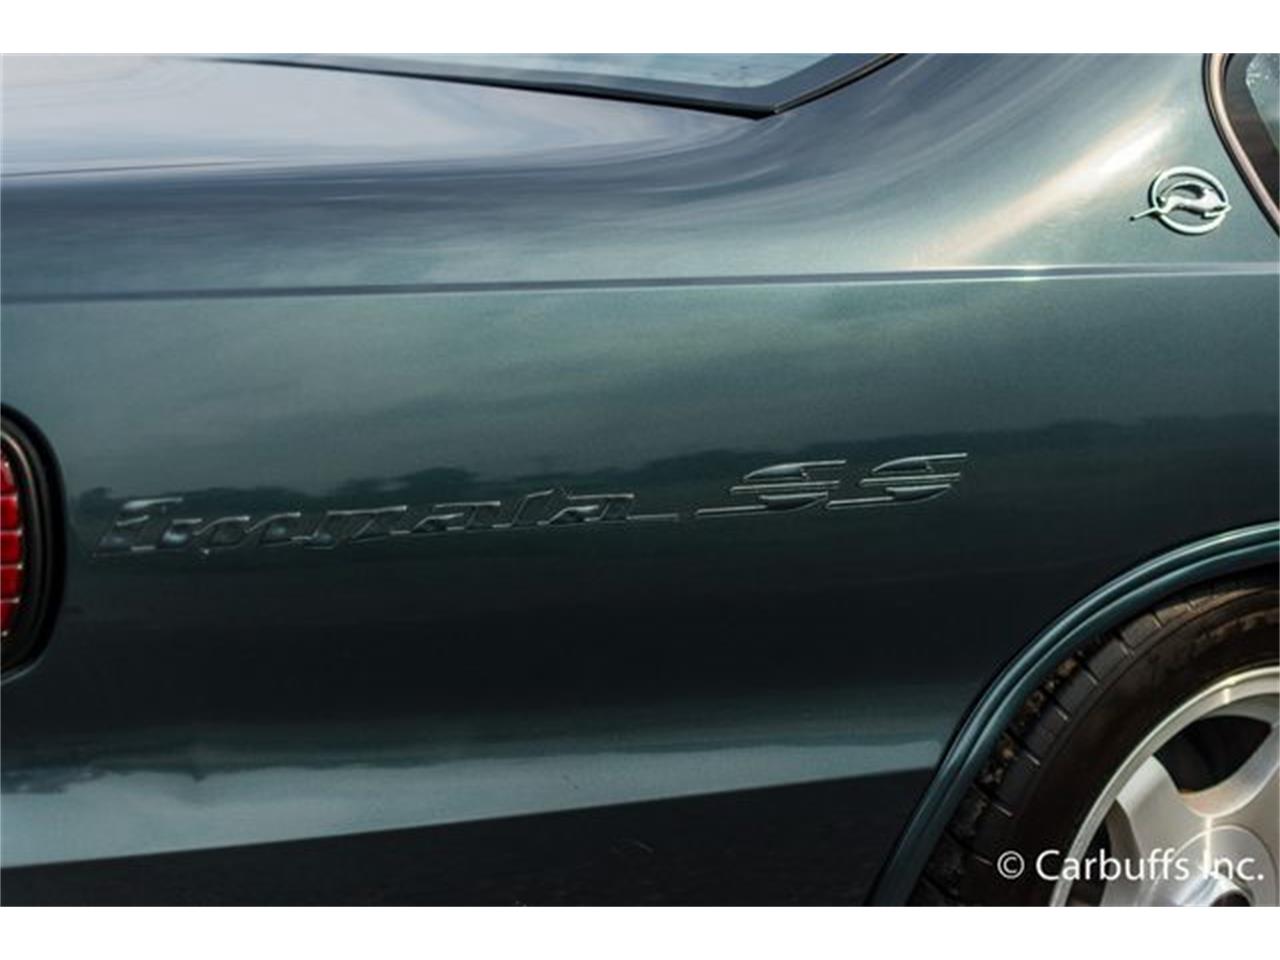 1996 Chevrolet Impala SS for Sale | ClassicCars.com | CC-1020541